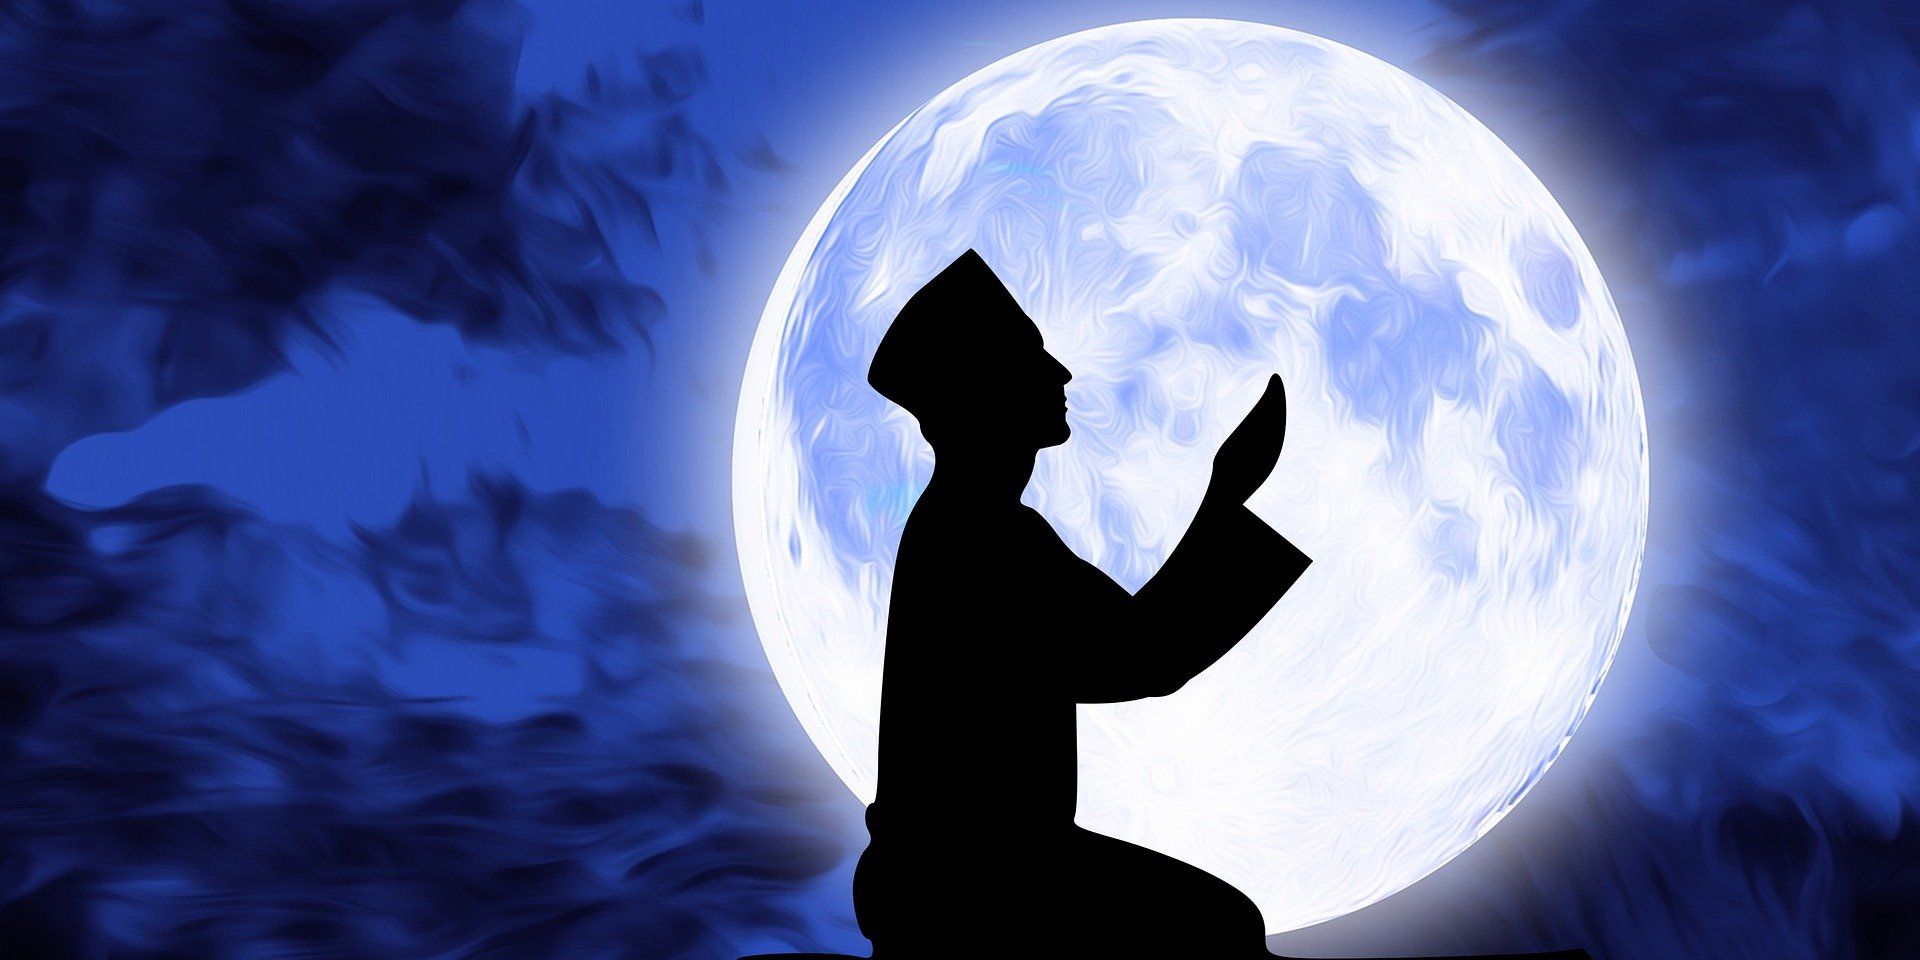 Doa niat puasa Ramadhan 2023 dan penjelasan dalil pentingnya puasa berdasarkan Al-Qur'an dan hadist.